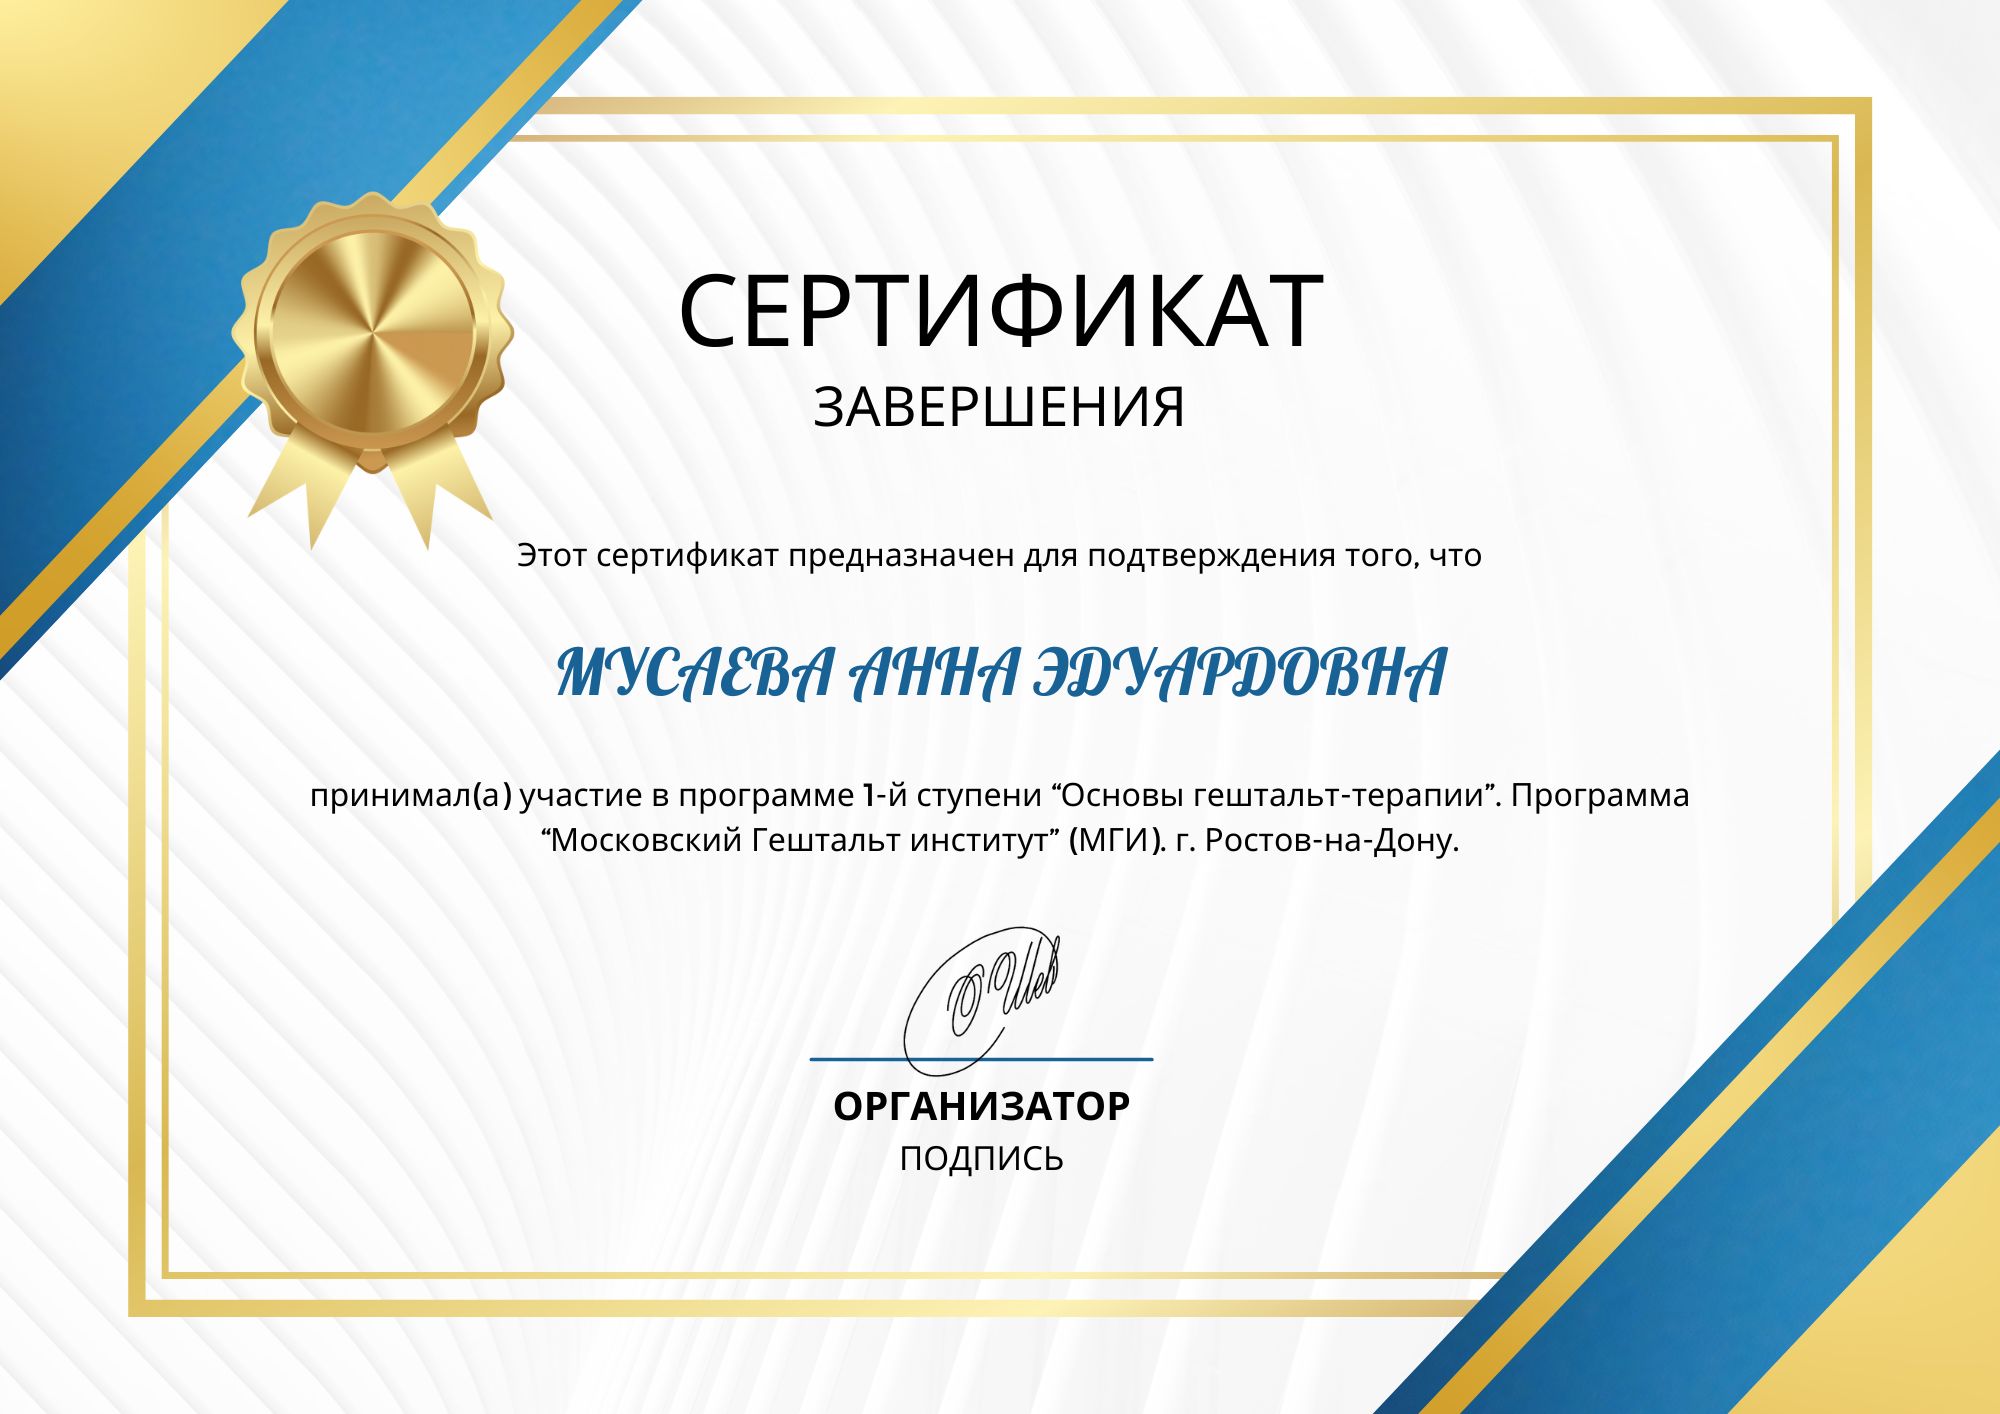 Фотография сертификата Мусаевой Анны Эдуардовны за участие в программе первой ступени